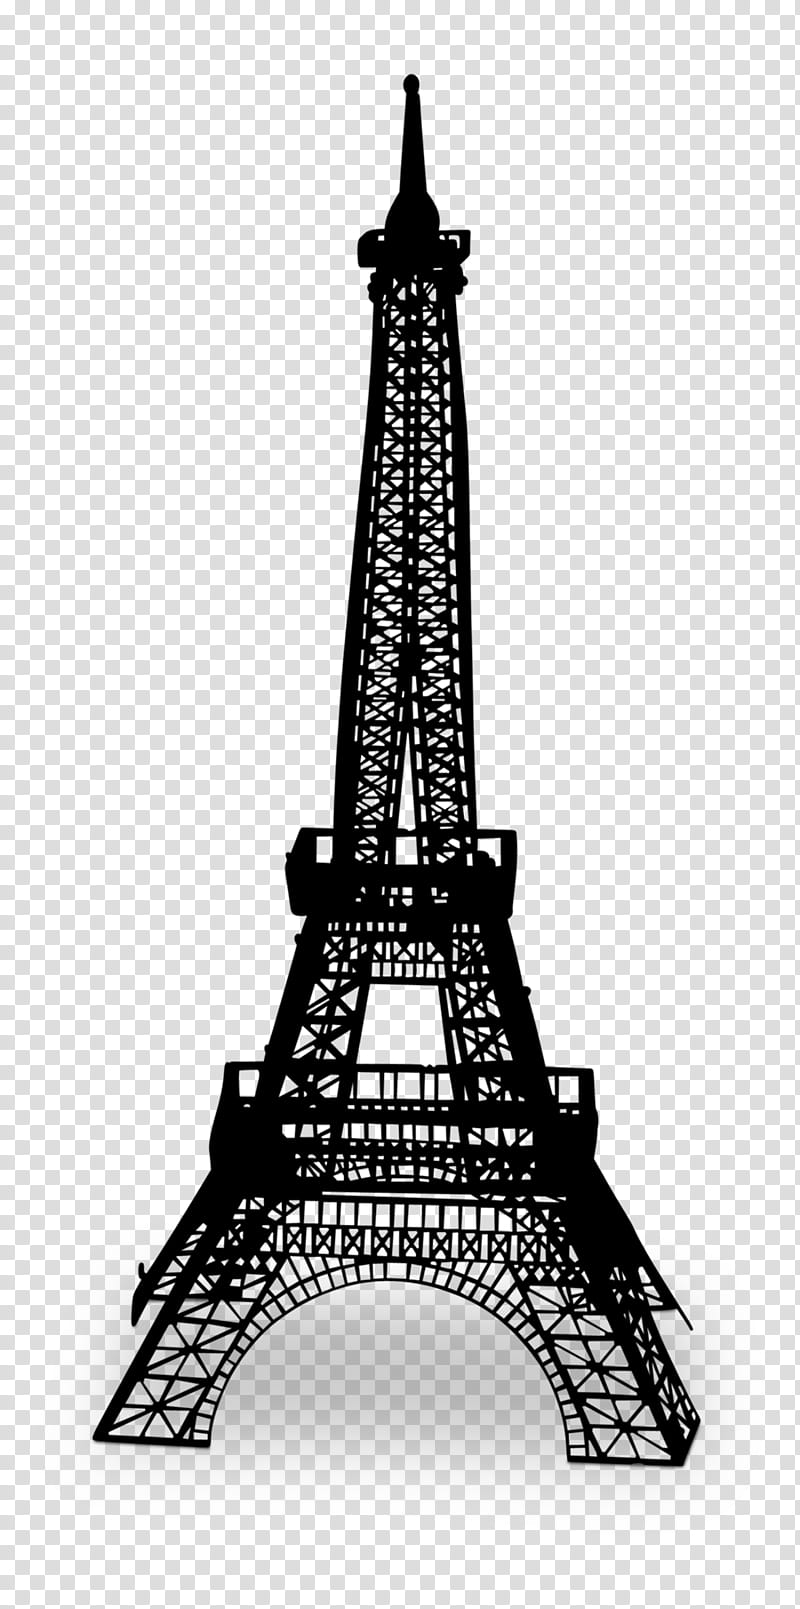 Eiffel Tower, Champ De Mars, Landmark, Souvenir, Eiffel Tower Replicas And Derivatives, Model, Lego 21019 Architecture The Eiffel Tower, Paris transparent background PNG clipart